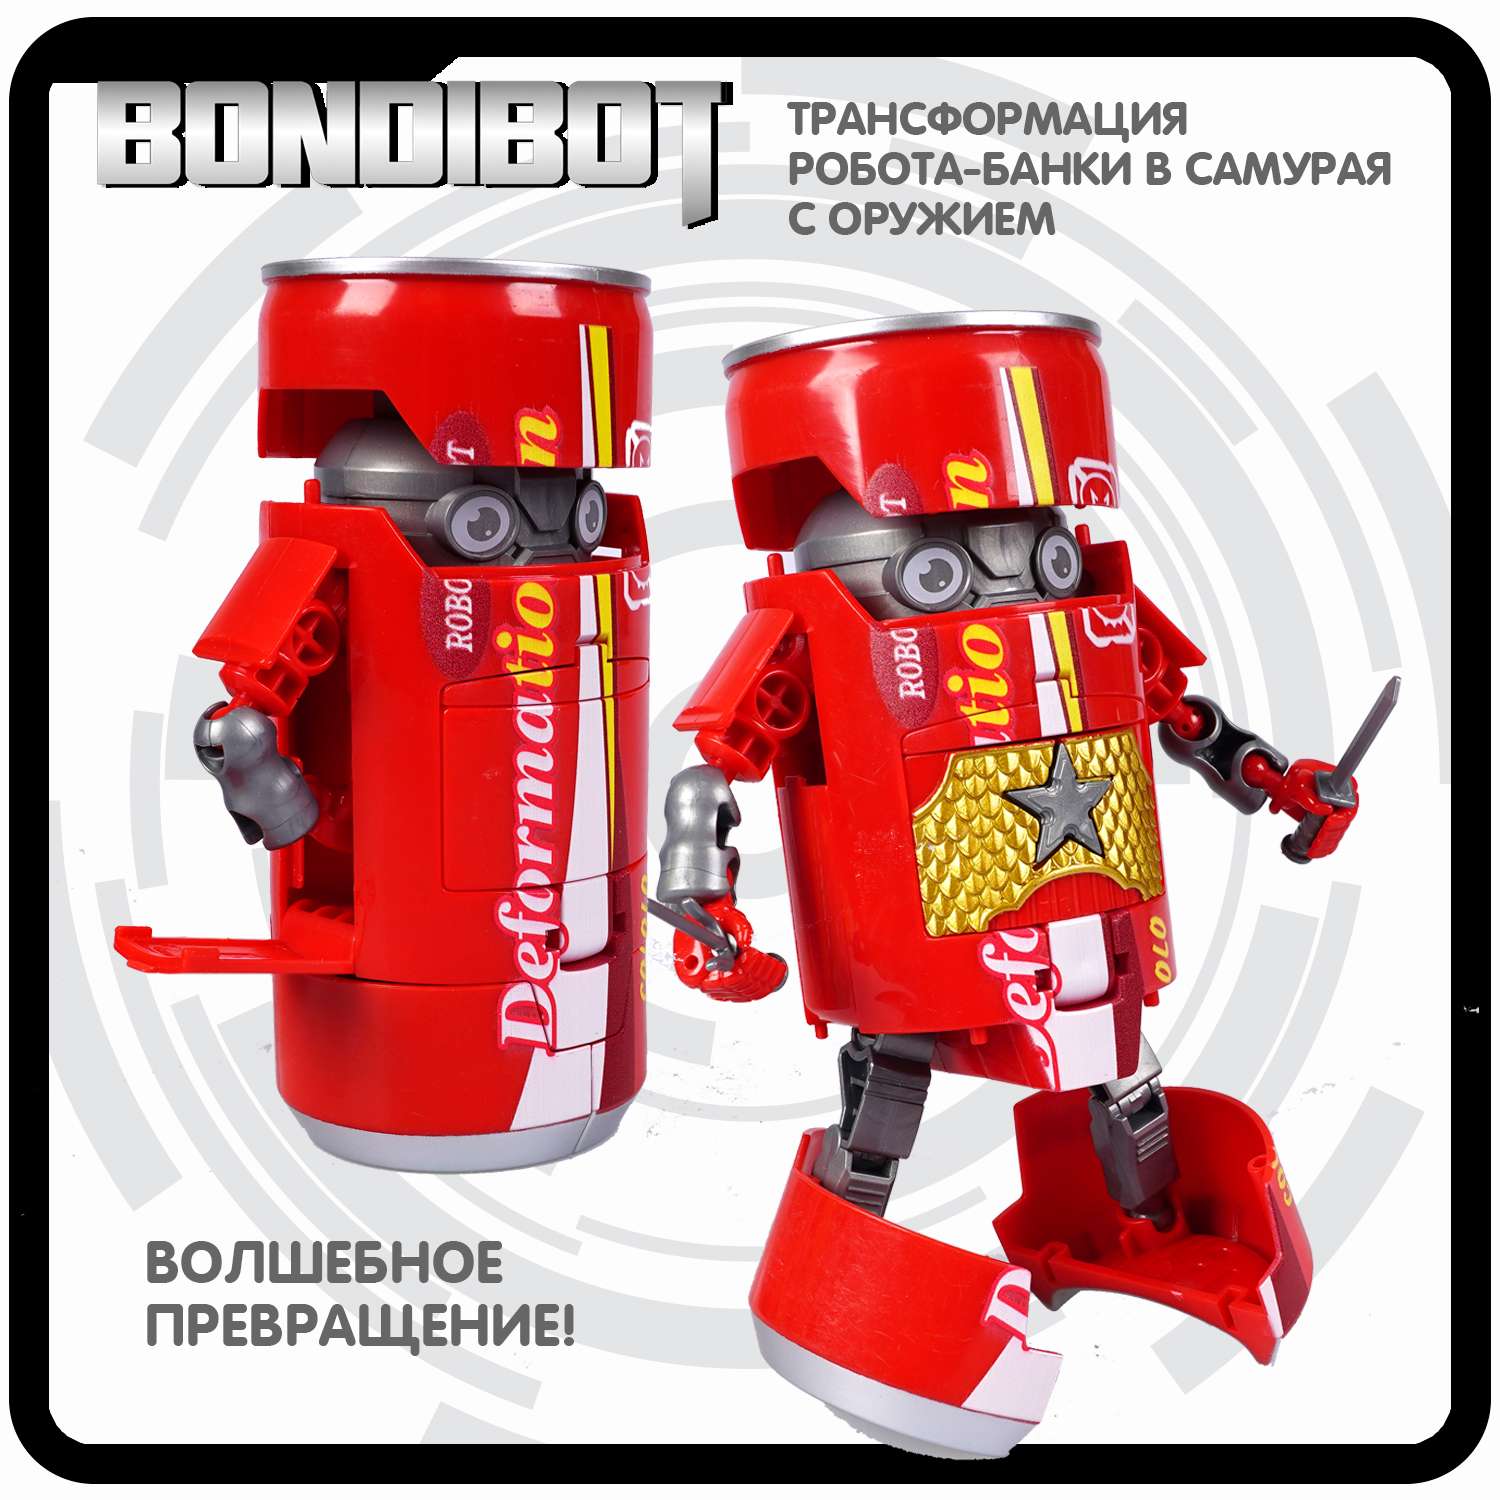 Трансформер BONDIBON BONDIBOT 2 в 1 банка - робот Самурай с оружием красного цвета - фото 4